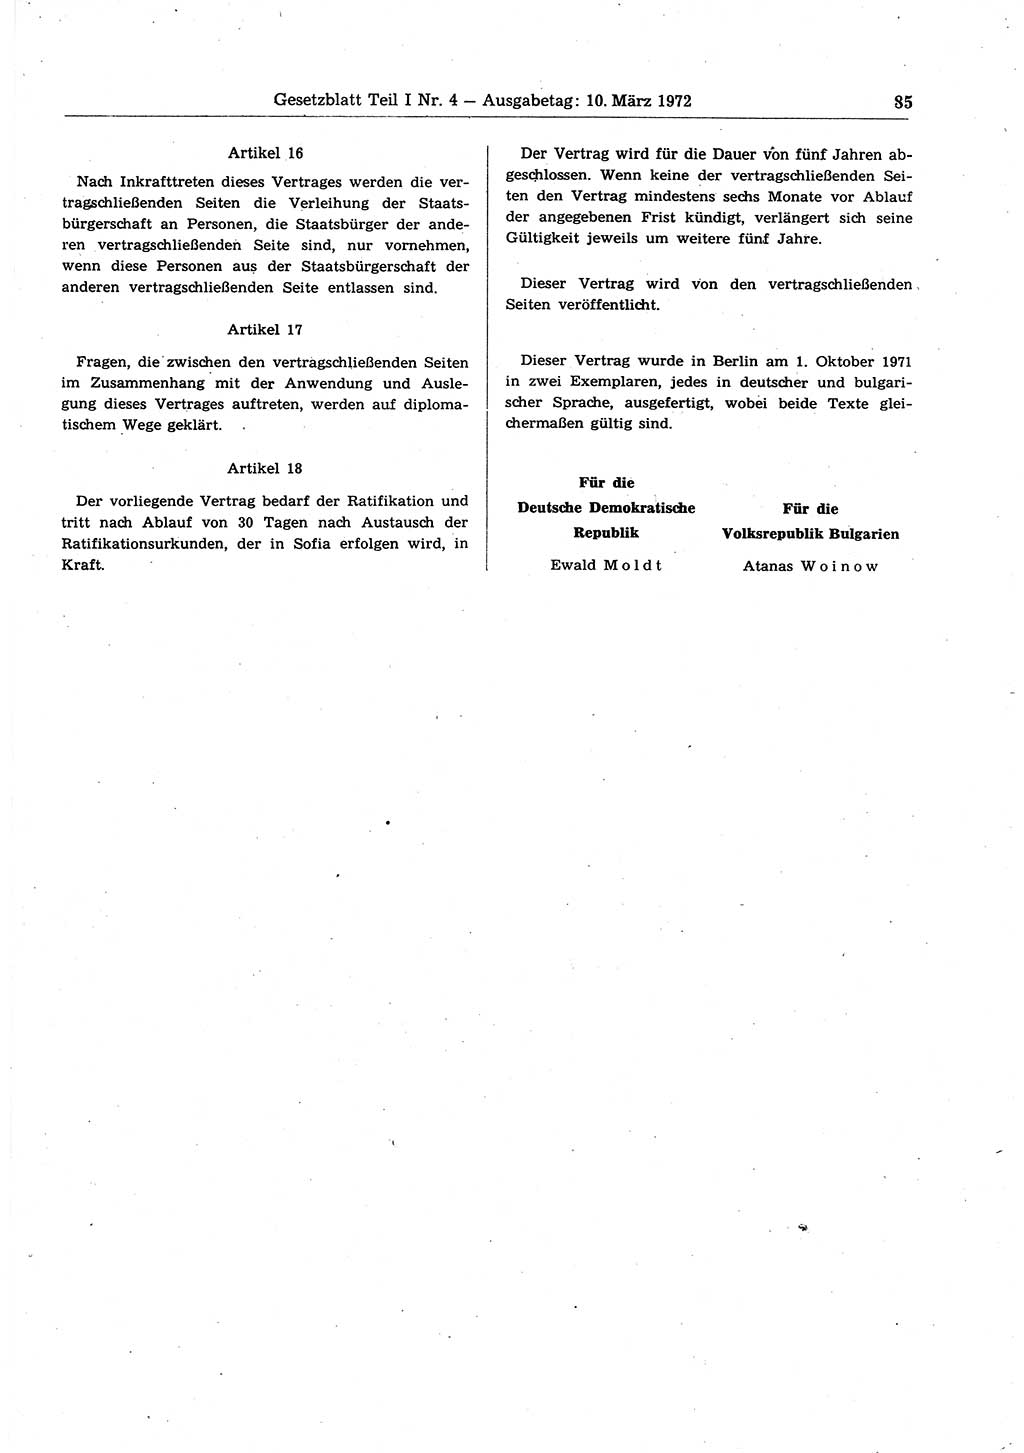 Gesetzblatt (GBl.) der Deutschen Demokratischen Republik (DDR) Teil Ⅰ 1972, Seite 85 (GBl. DDR Ⅰ 1972, S. 85)